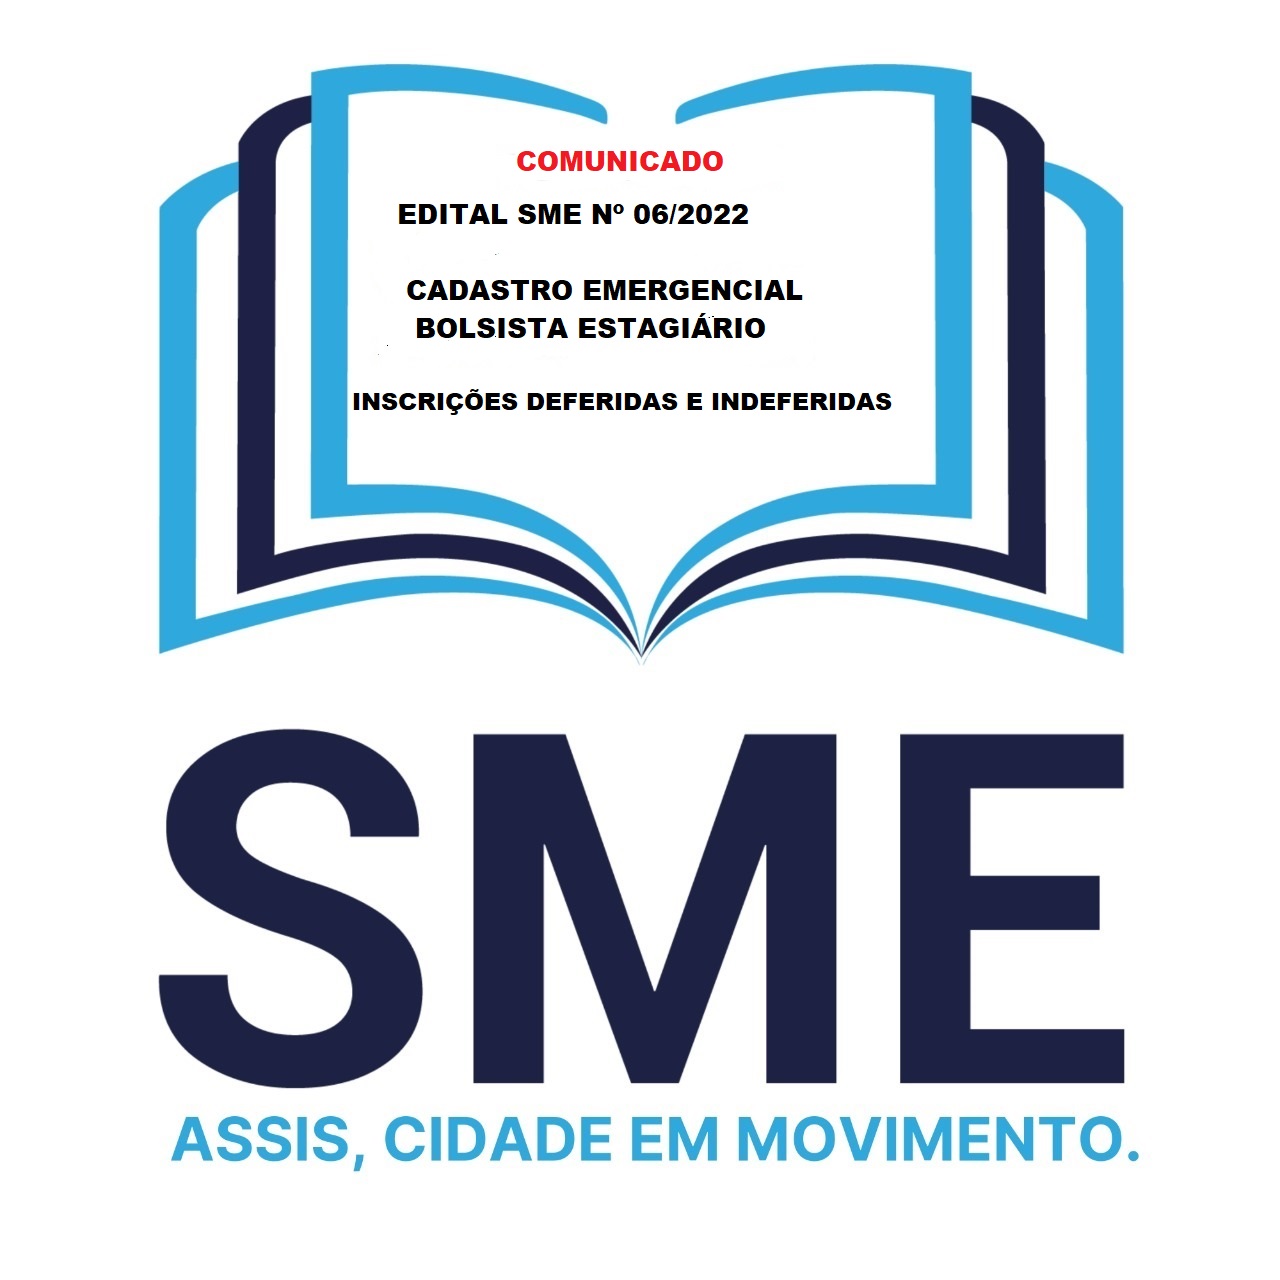 EDITAL SME Nº 06/2022 - CADASTRO EMERGENCIAL PARA BOLSISTA ESTAGIÁRIO